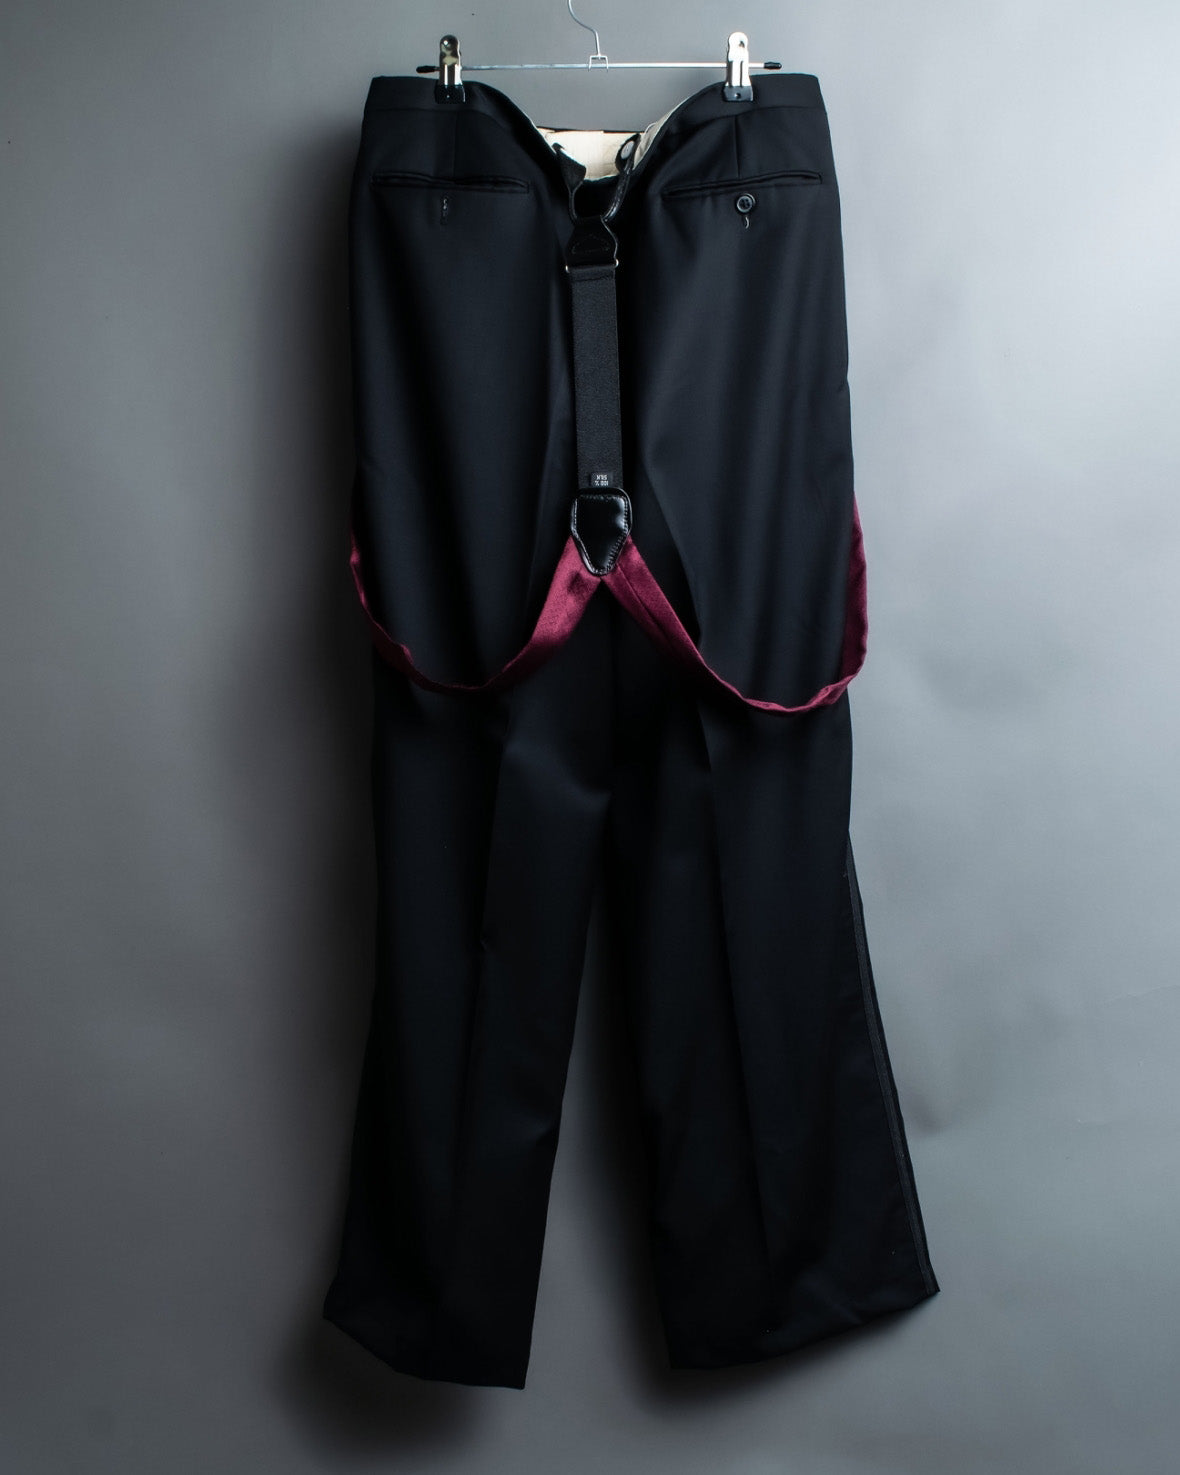 Silk Suspenders Chewy Slacks